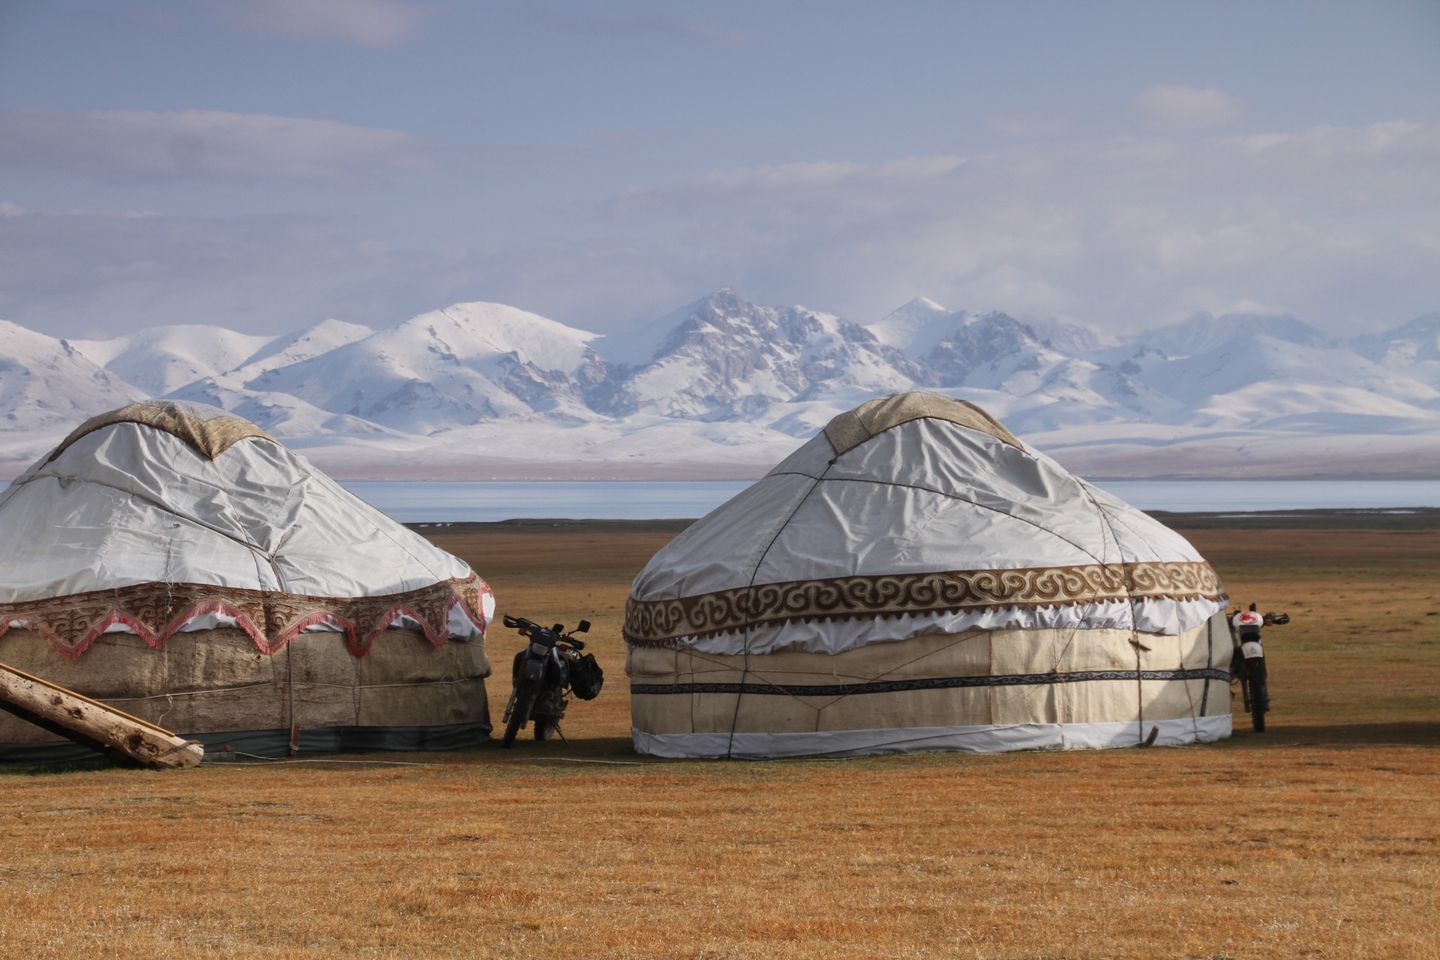 Colorado Trail, Aljaška, na motorke z Mongolska do Kirgizska + Expedičná kamera Múzeum SNP